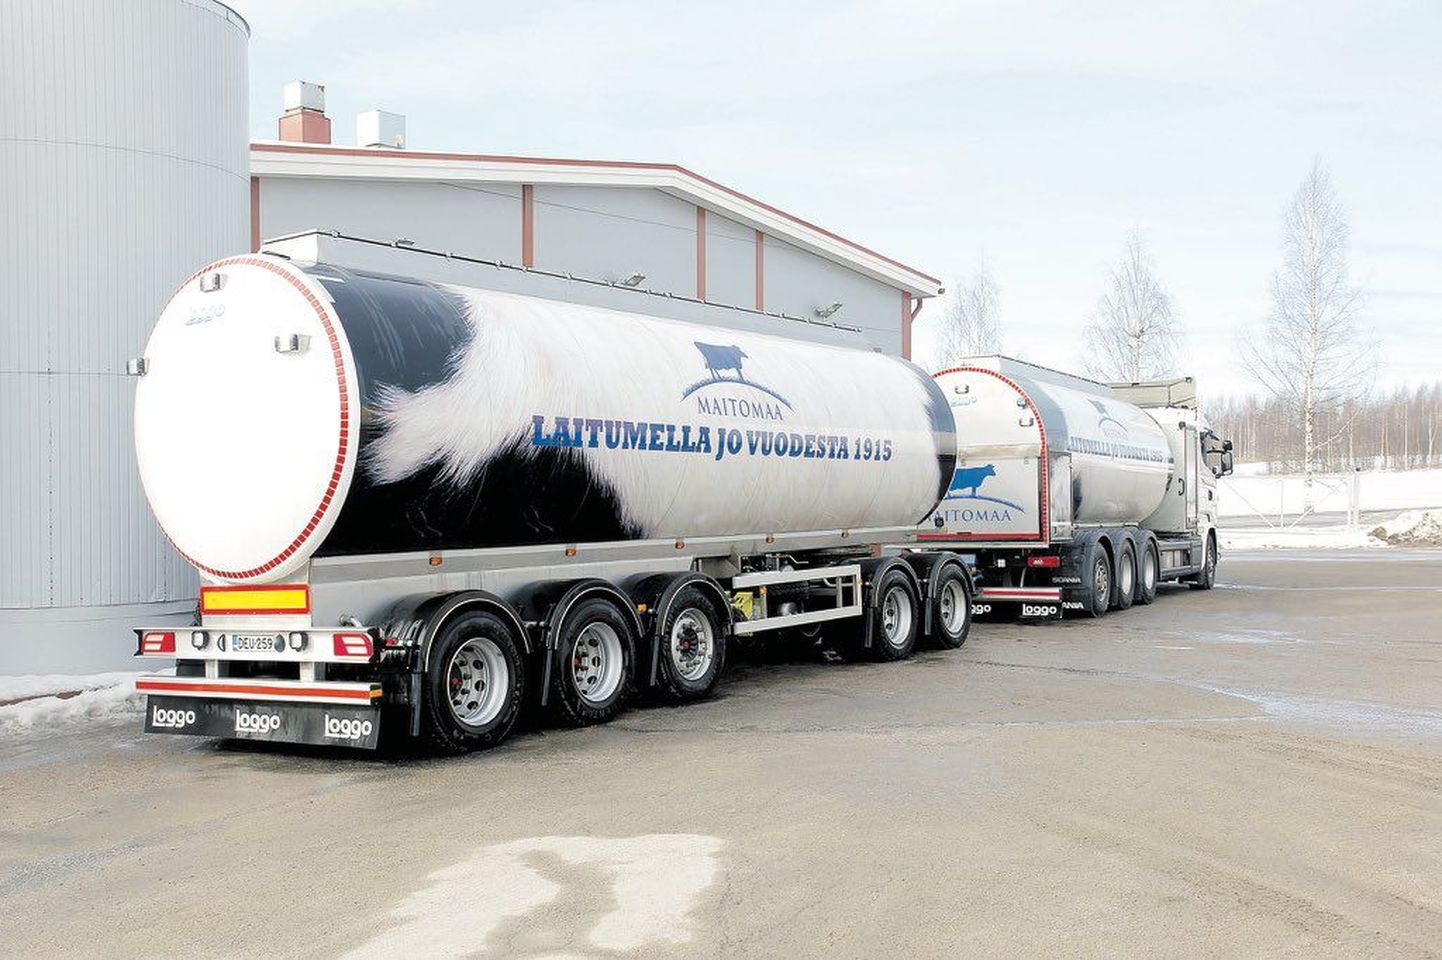 Liiklusõnnetuse üks osapooltest oli ettevõttele Maitomaa kuulunud piimaveok.